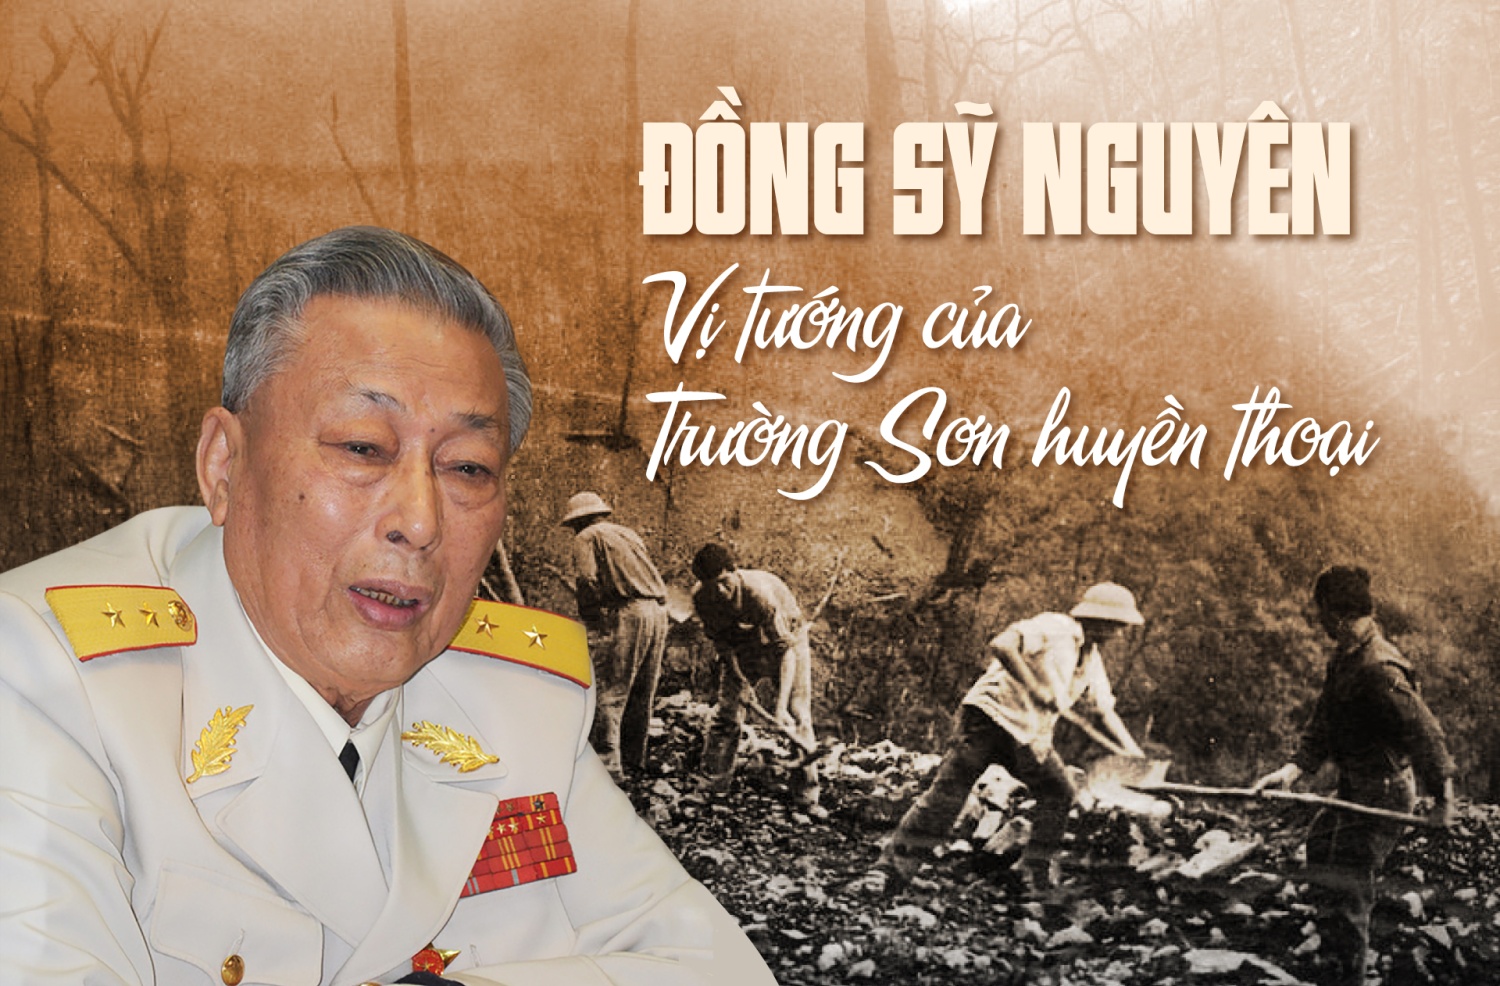 Tuyên truyền kỷ niệm 100 năm Ngày sinh đồng chí Trung tướng Đồng Sỹ Nguyên (01/3/1923 - 01/3/2023)